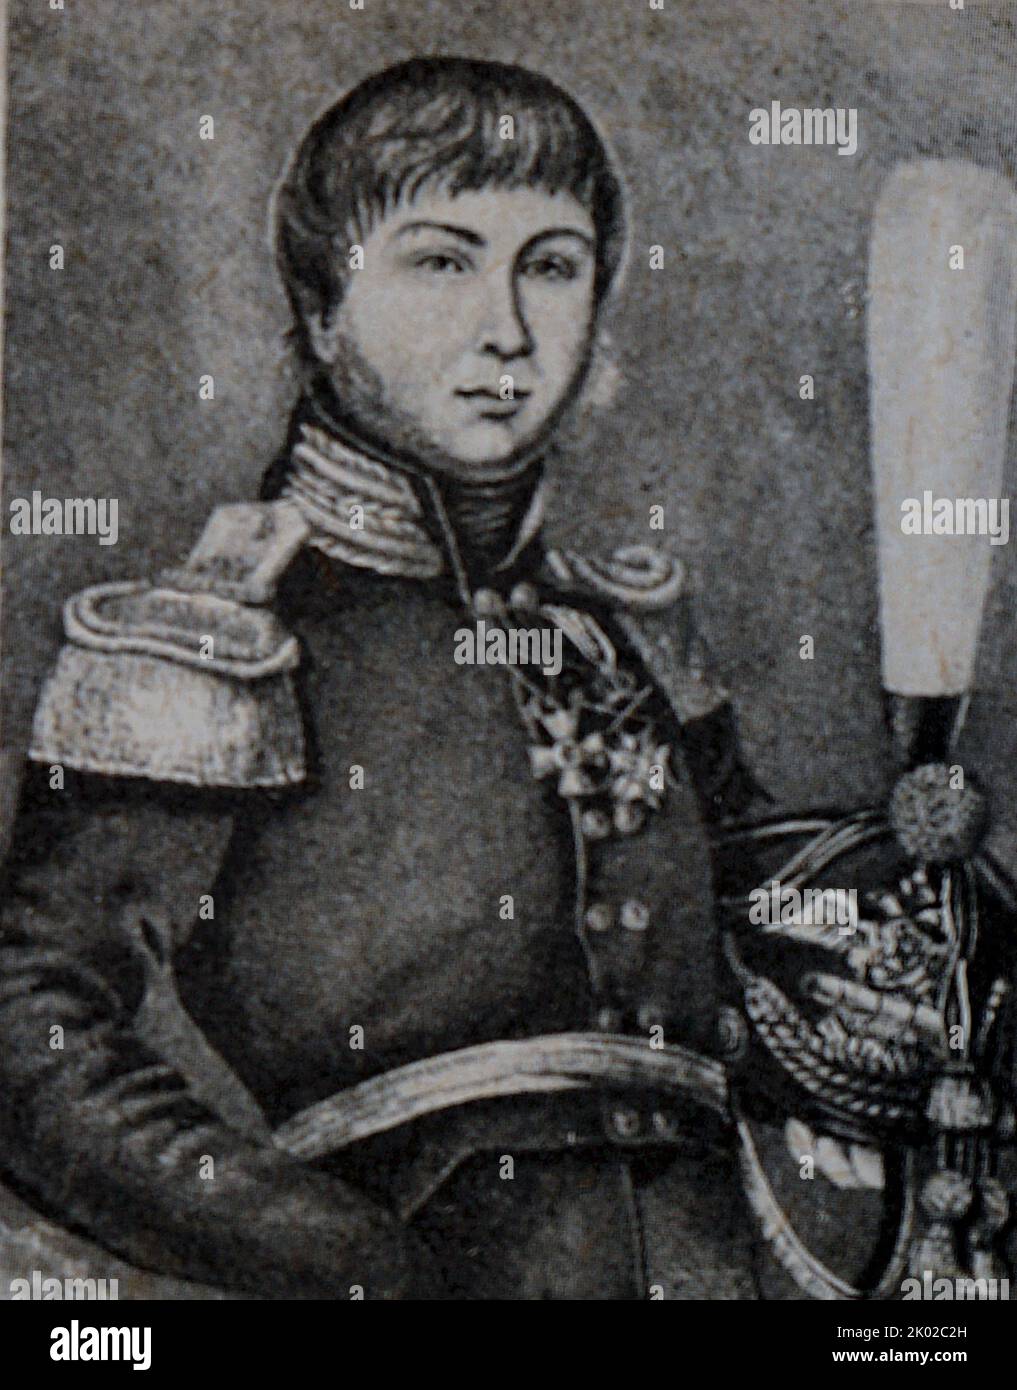 Alexander Samoilowitsch Figner (1787--1813) Oberst der Garde der Armee des Russischen Reiches, bekannt als Organisator von Partisaneneinheiten während der napoleonischen Invasion Russlands und später Deutschlands im Jahr 1812 Stockfoto